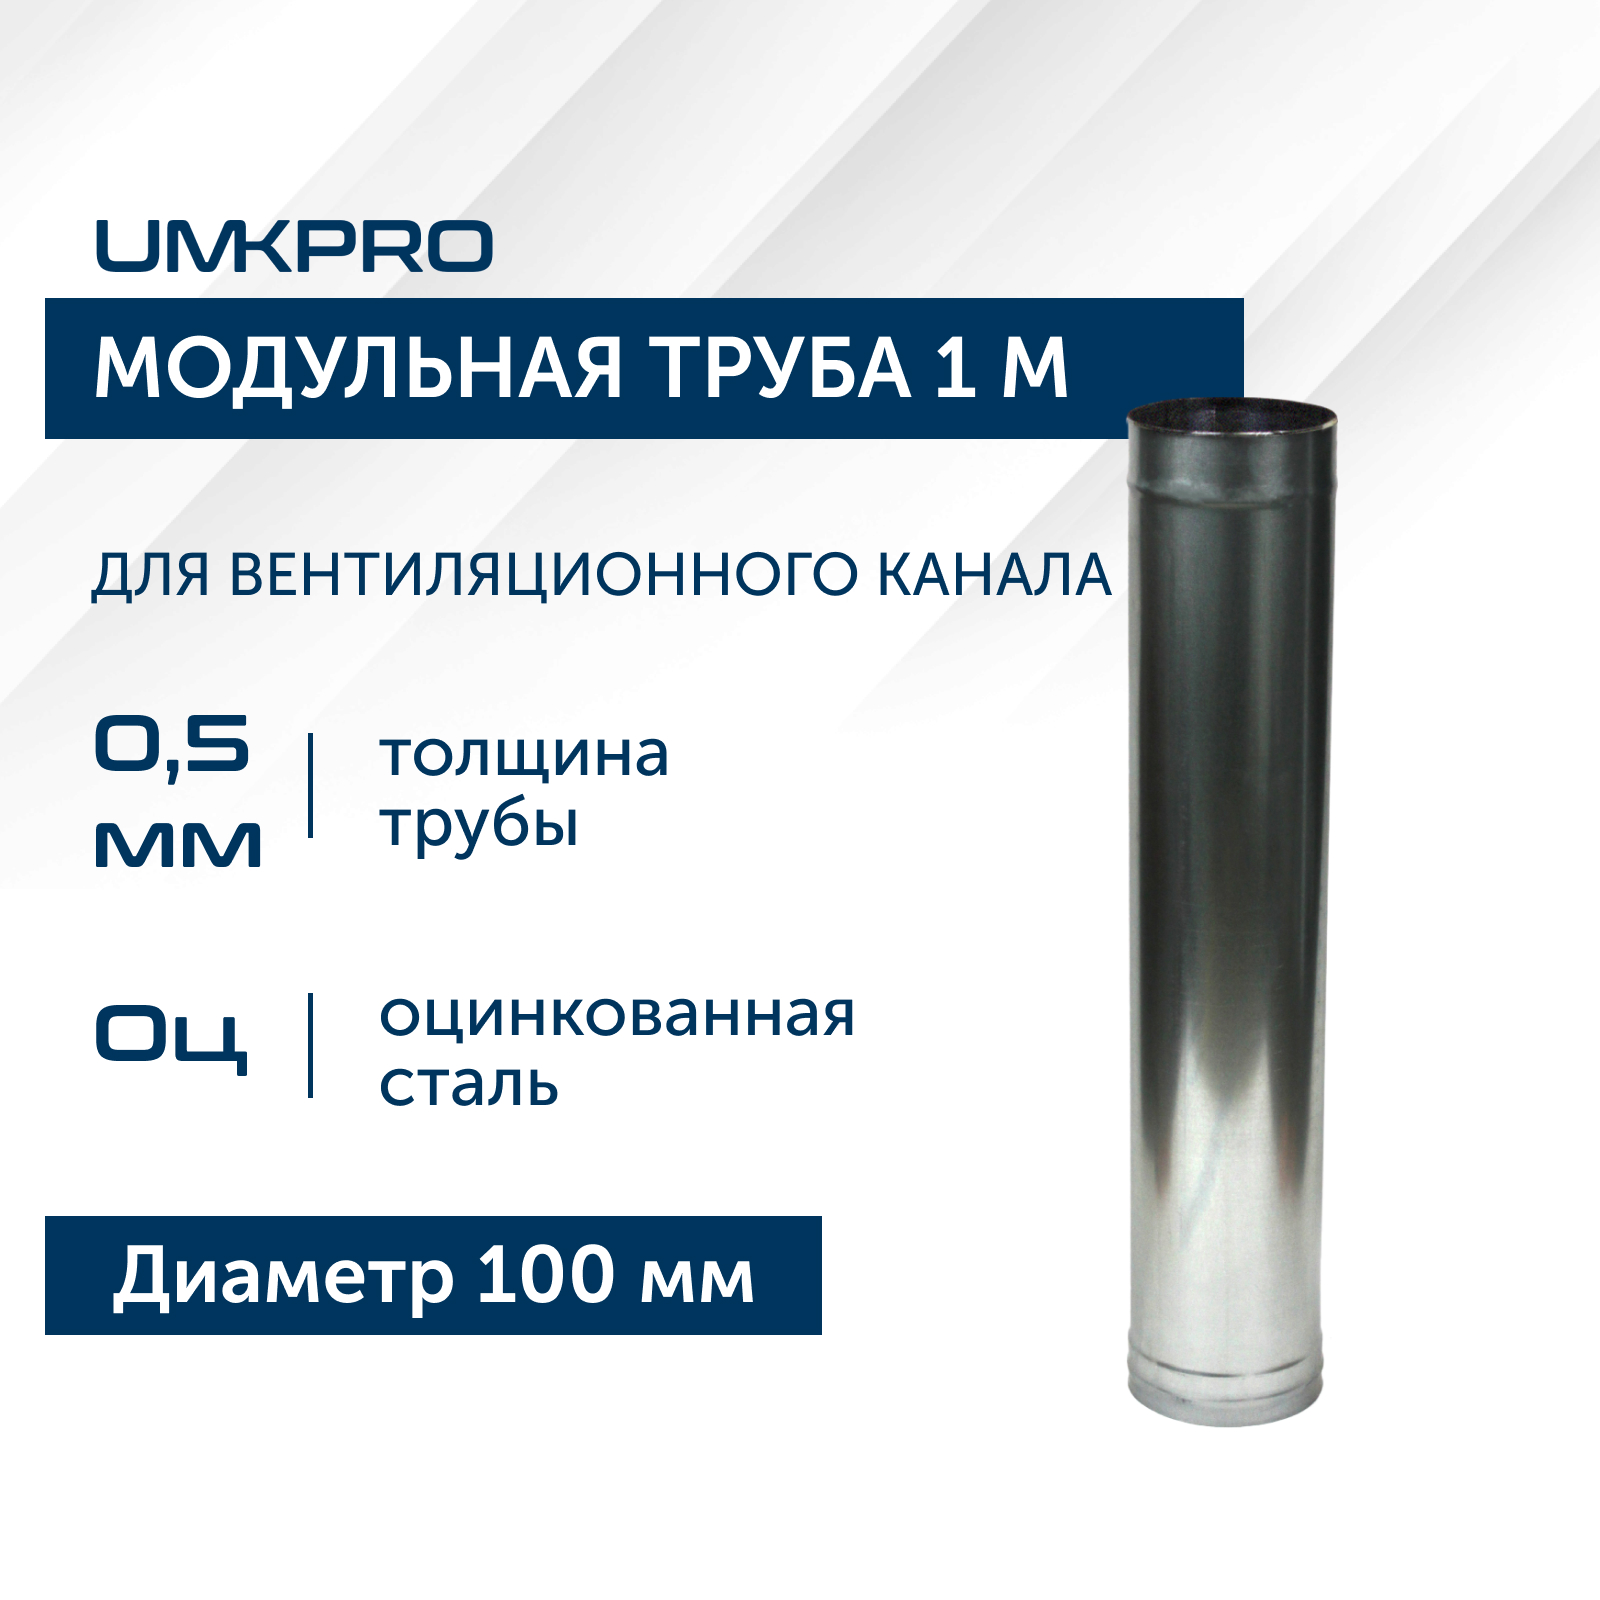 Труба модульная для дымохода 1 м UMKPRO, D 100, Оц/0,5мм модульная гостиная порту 18 мдф